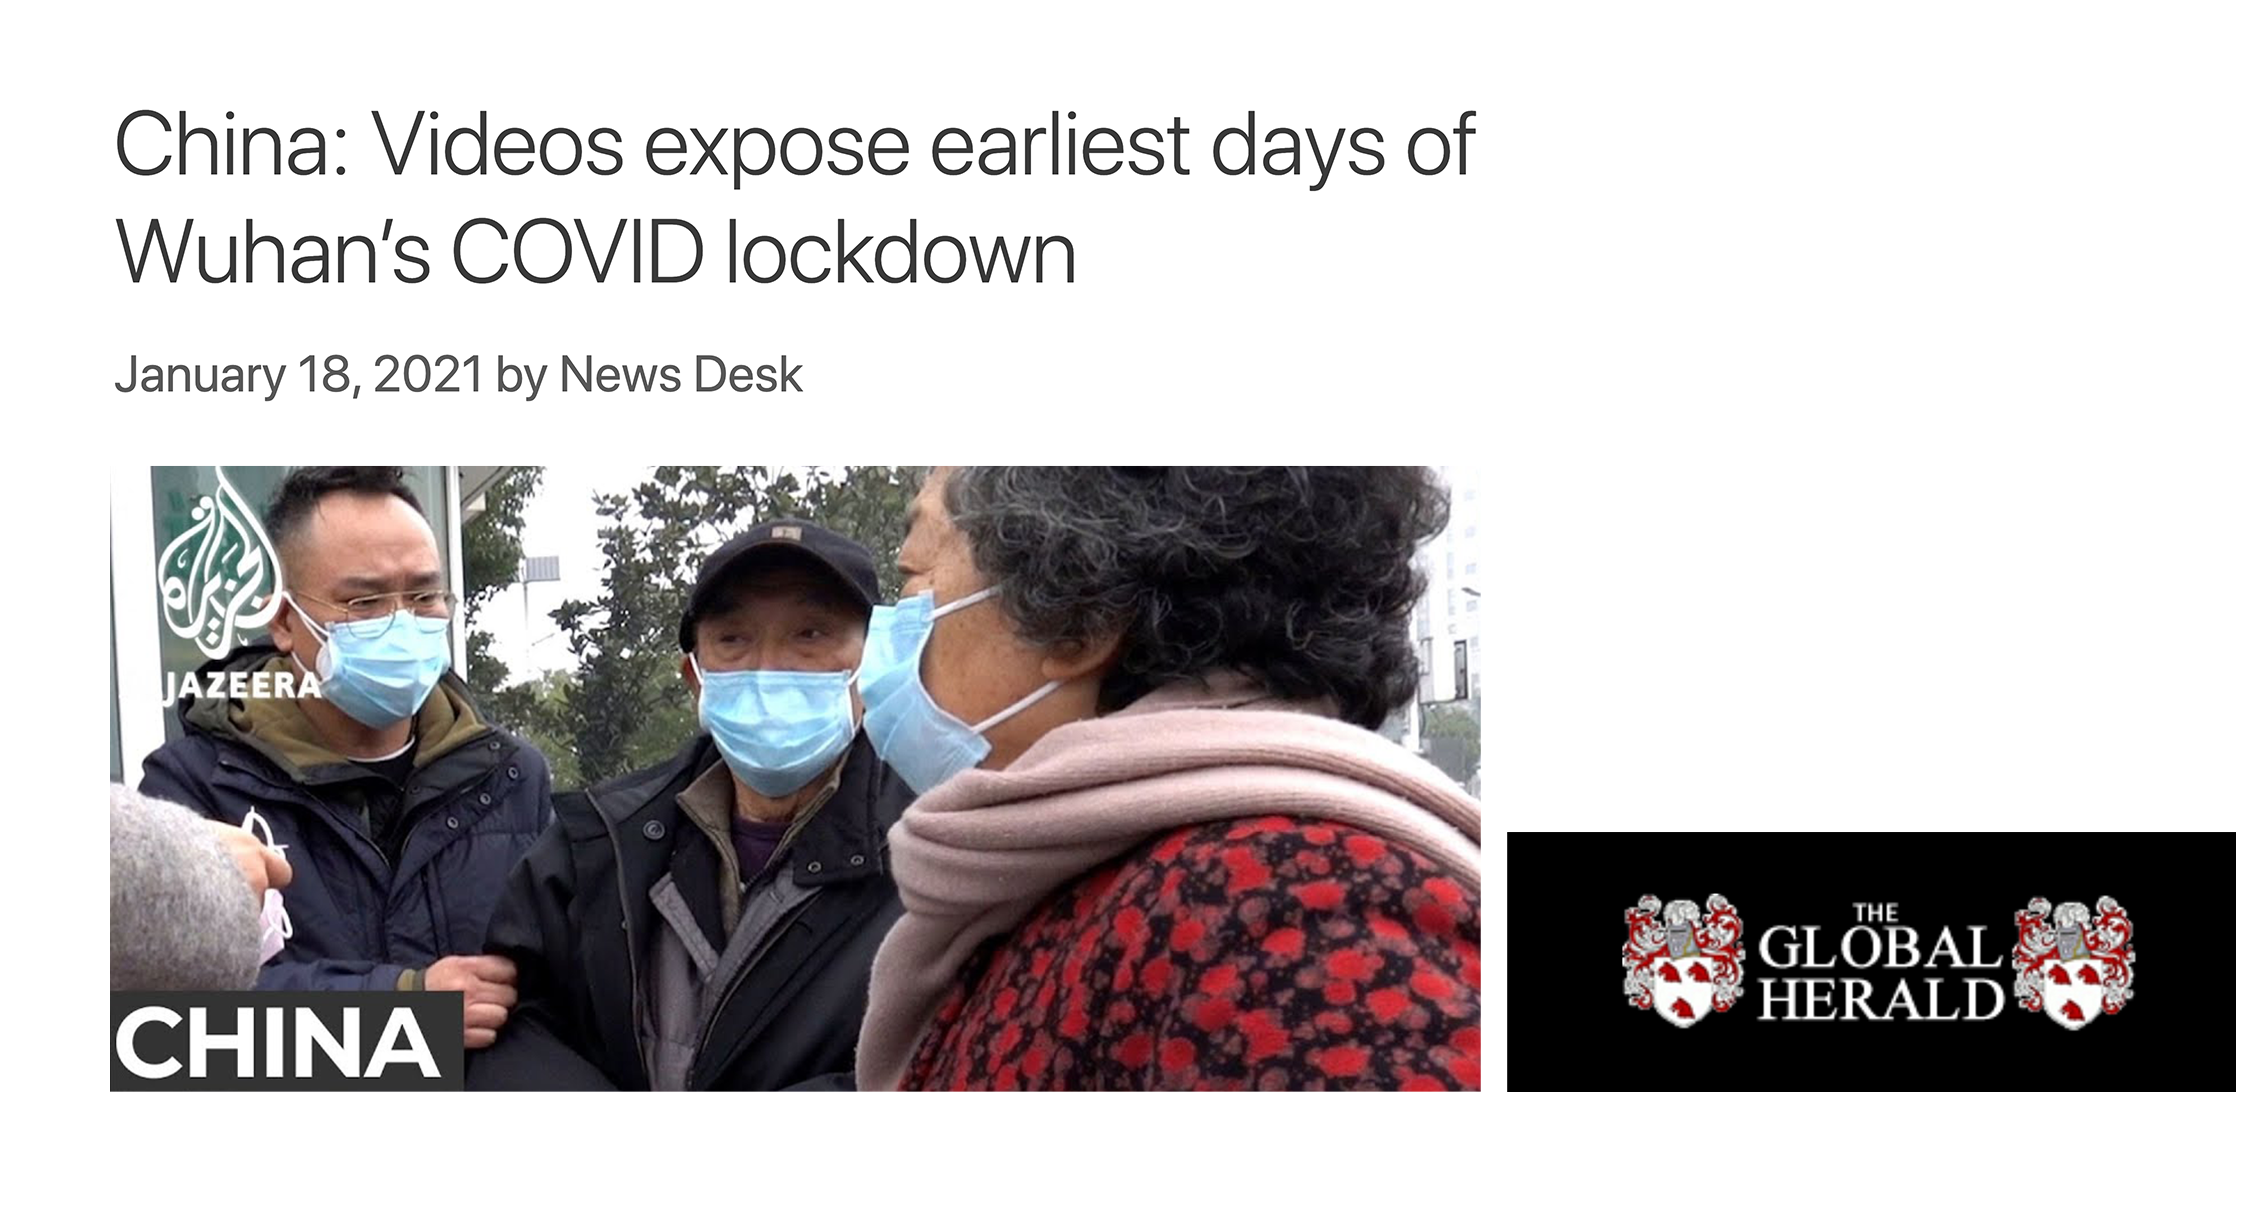 الصين: عرض مقاطع فيديو الأيام الأولى لإغلاق ووهان